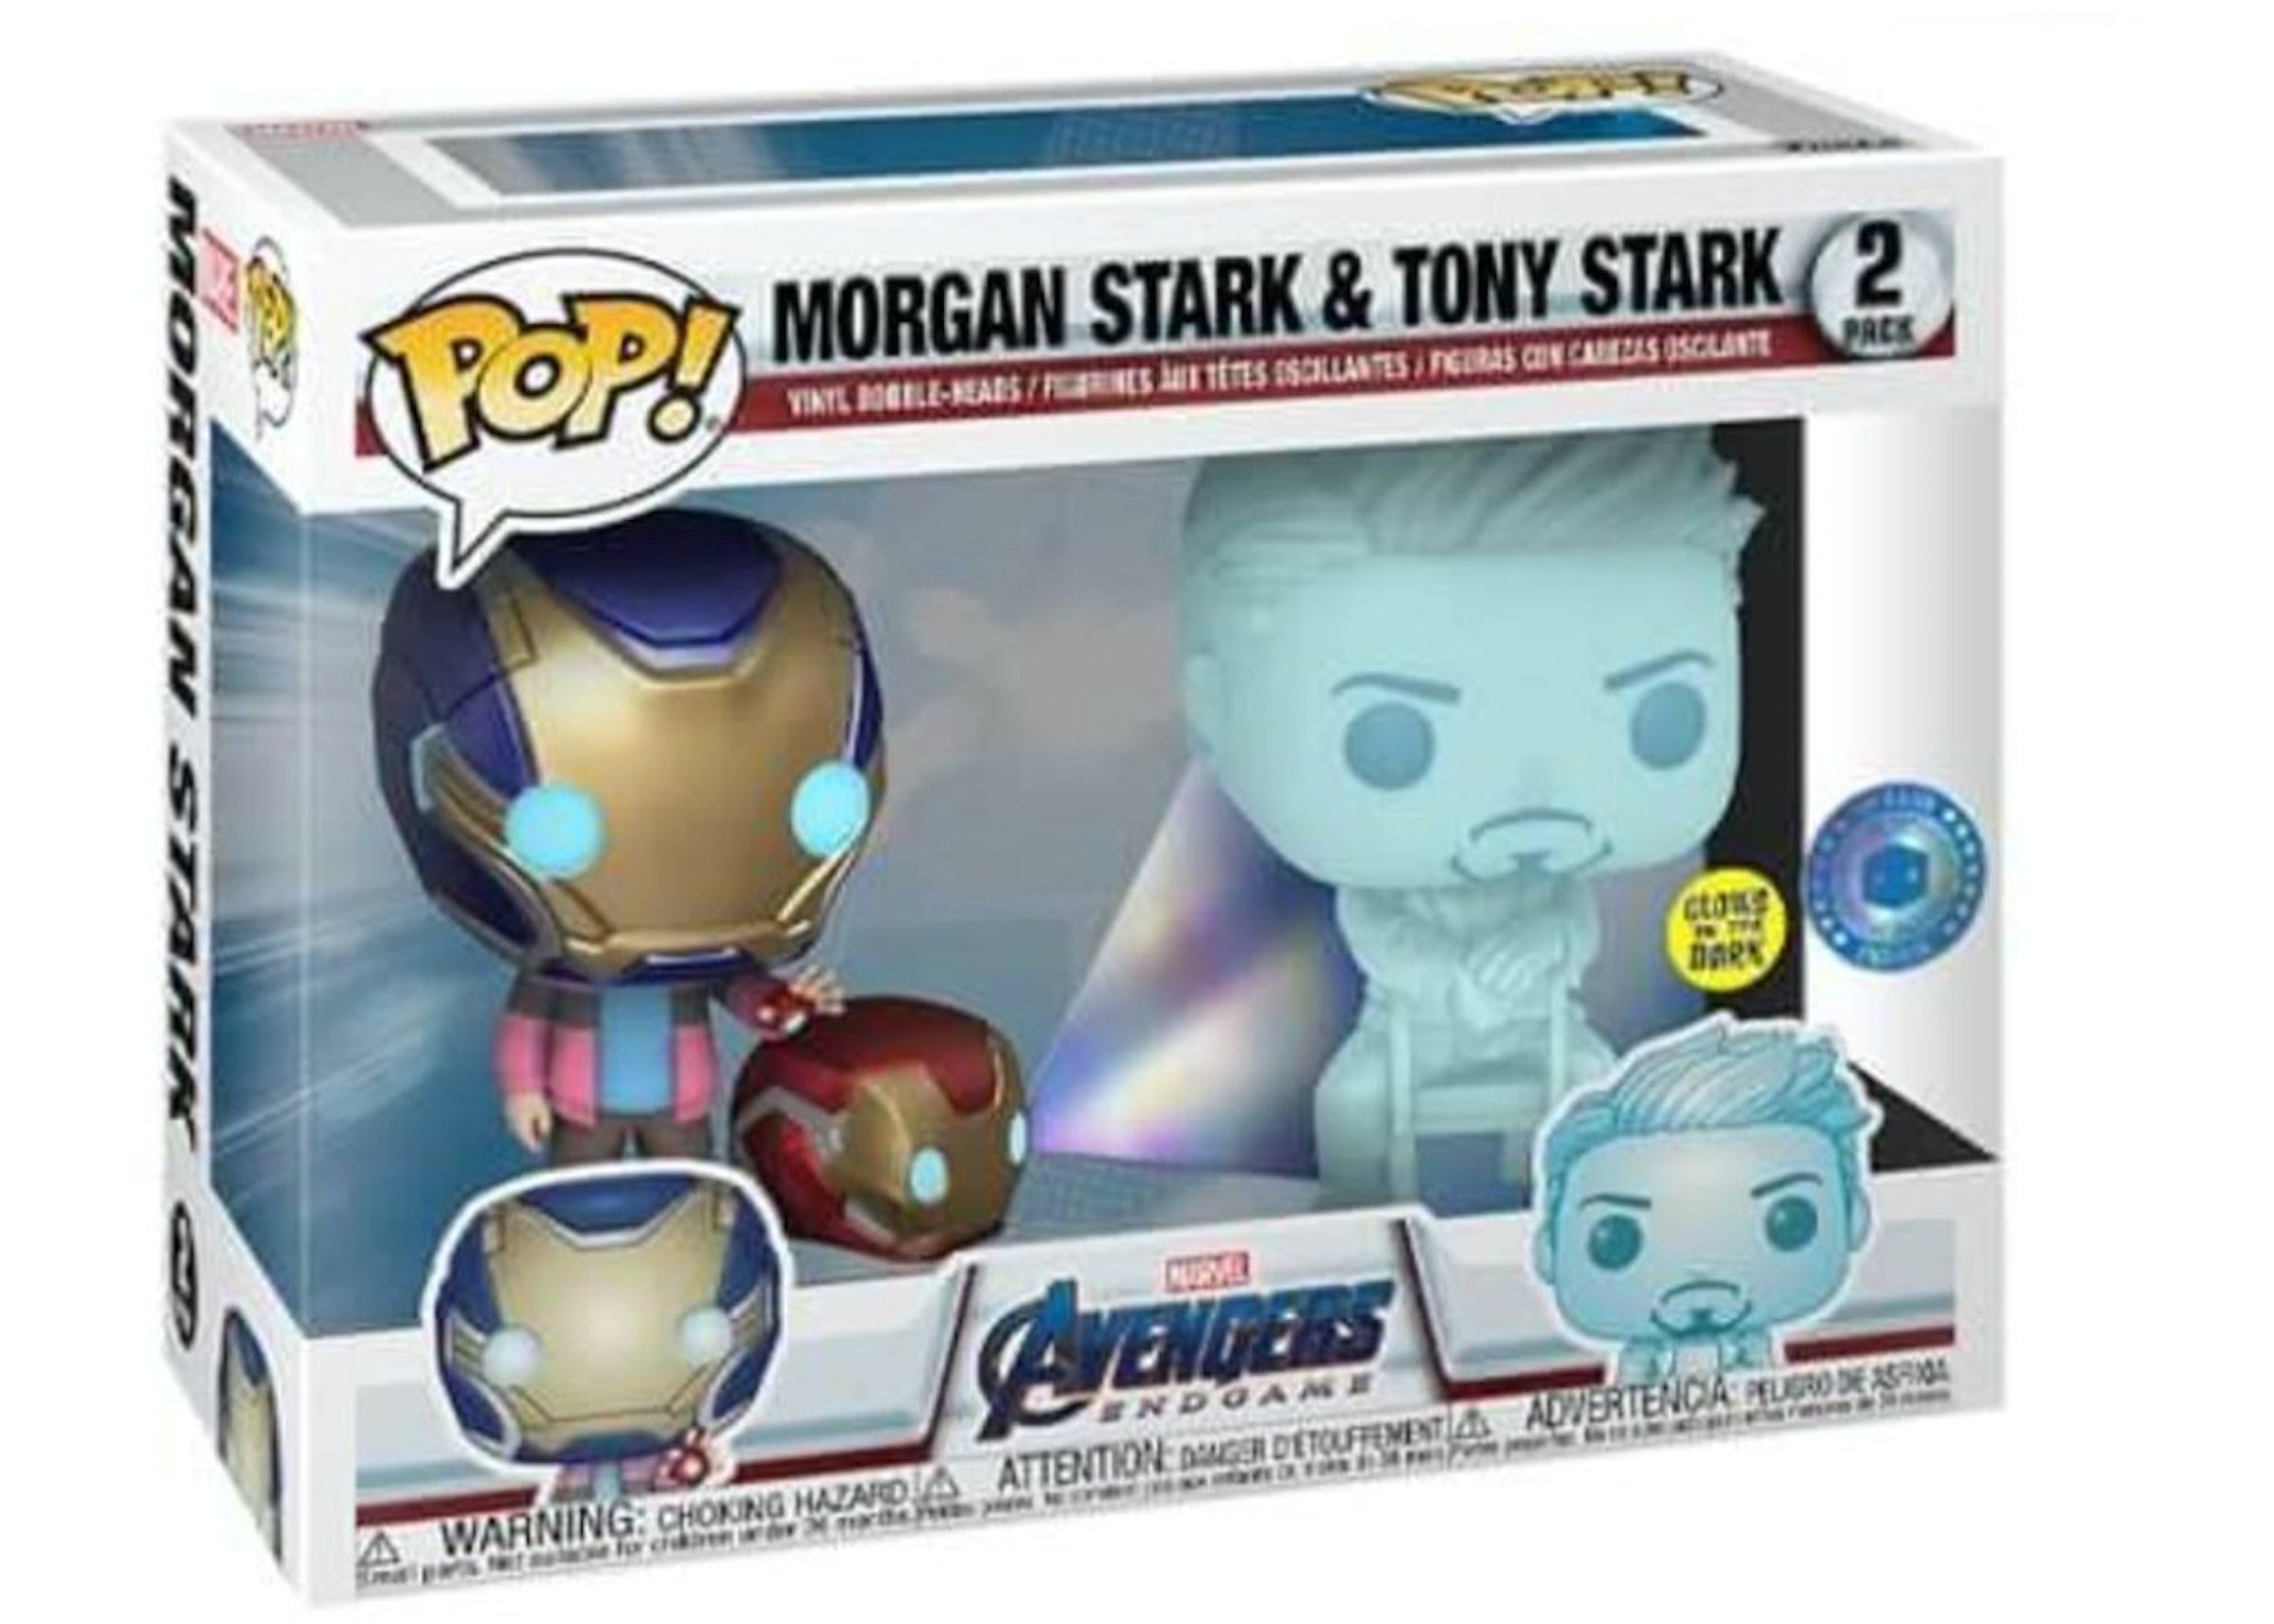 Funko Pop! Marvel Avengers Endgame Morgan Stark and Tony Stark Pop